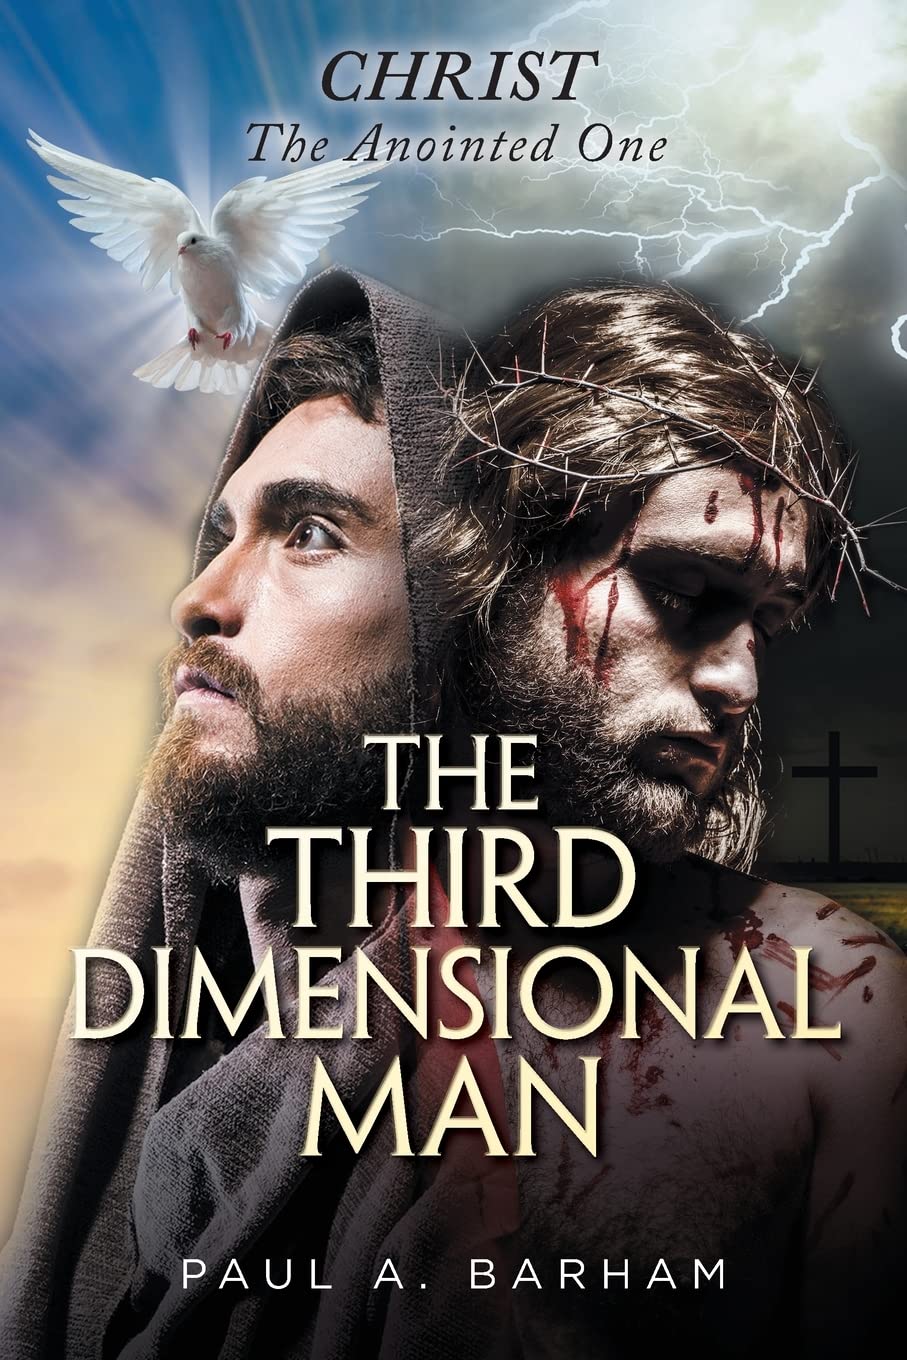 The Third Dimensional Man by Paul Barham